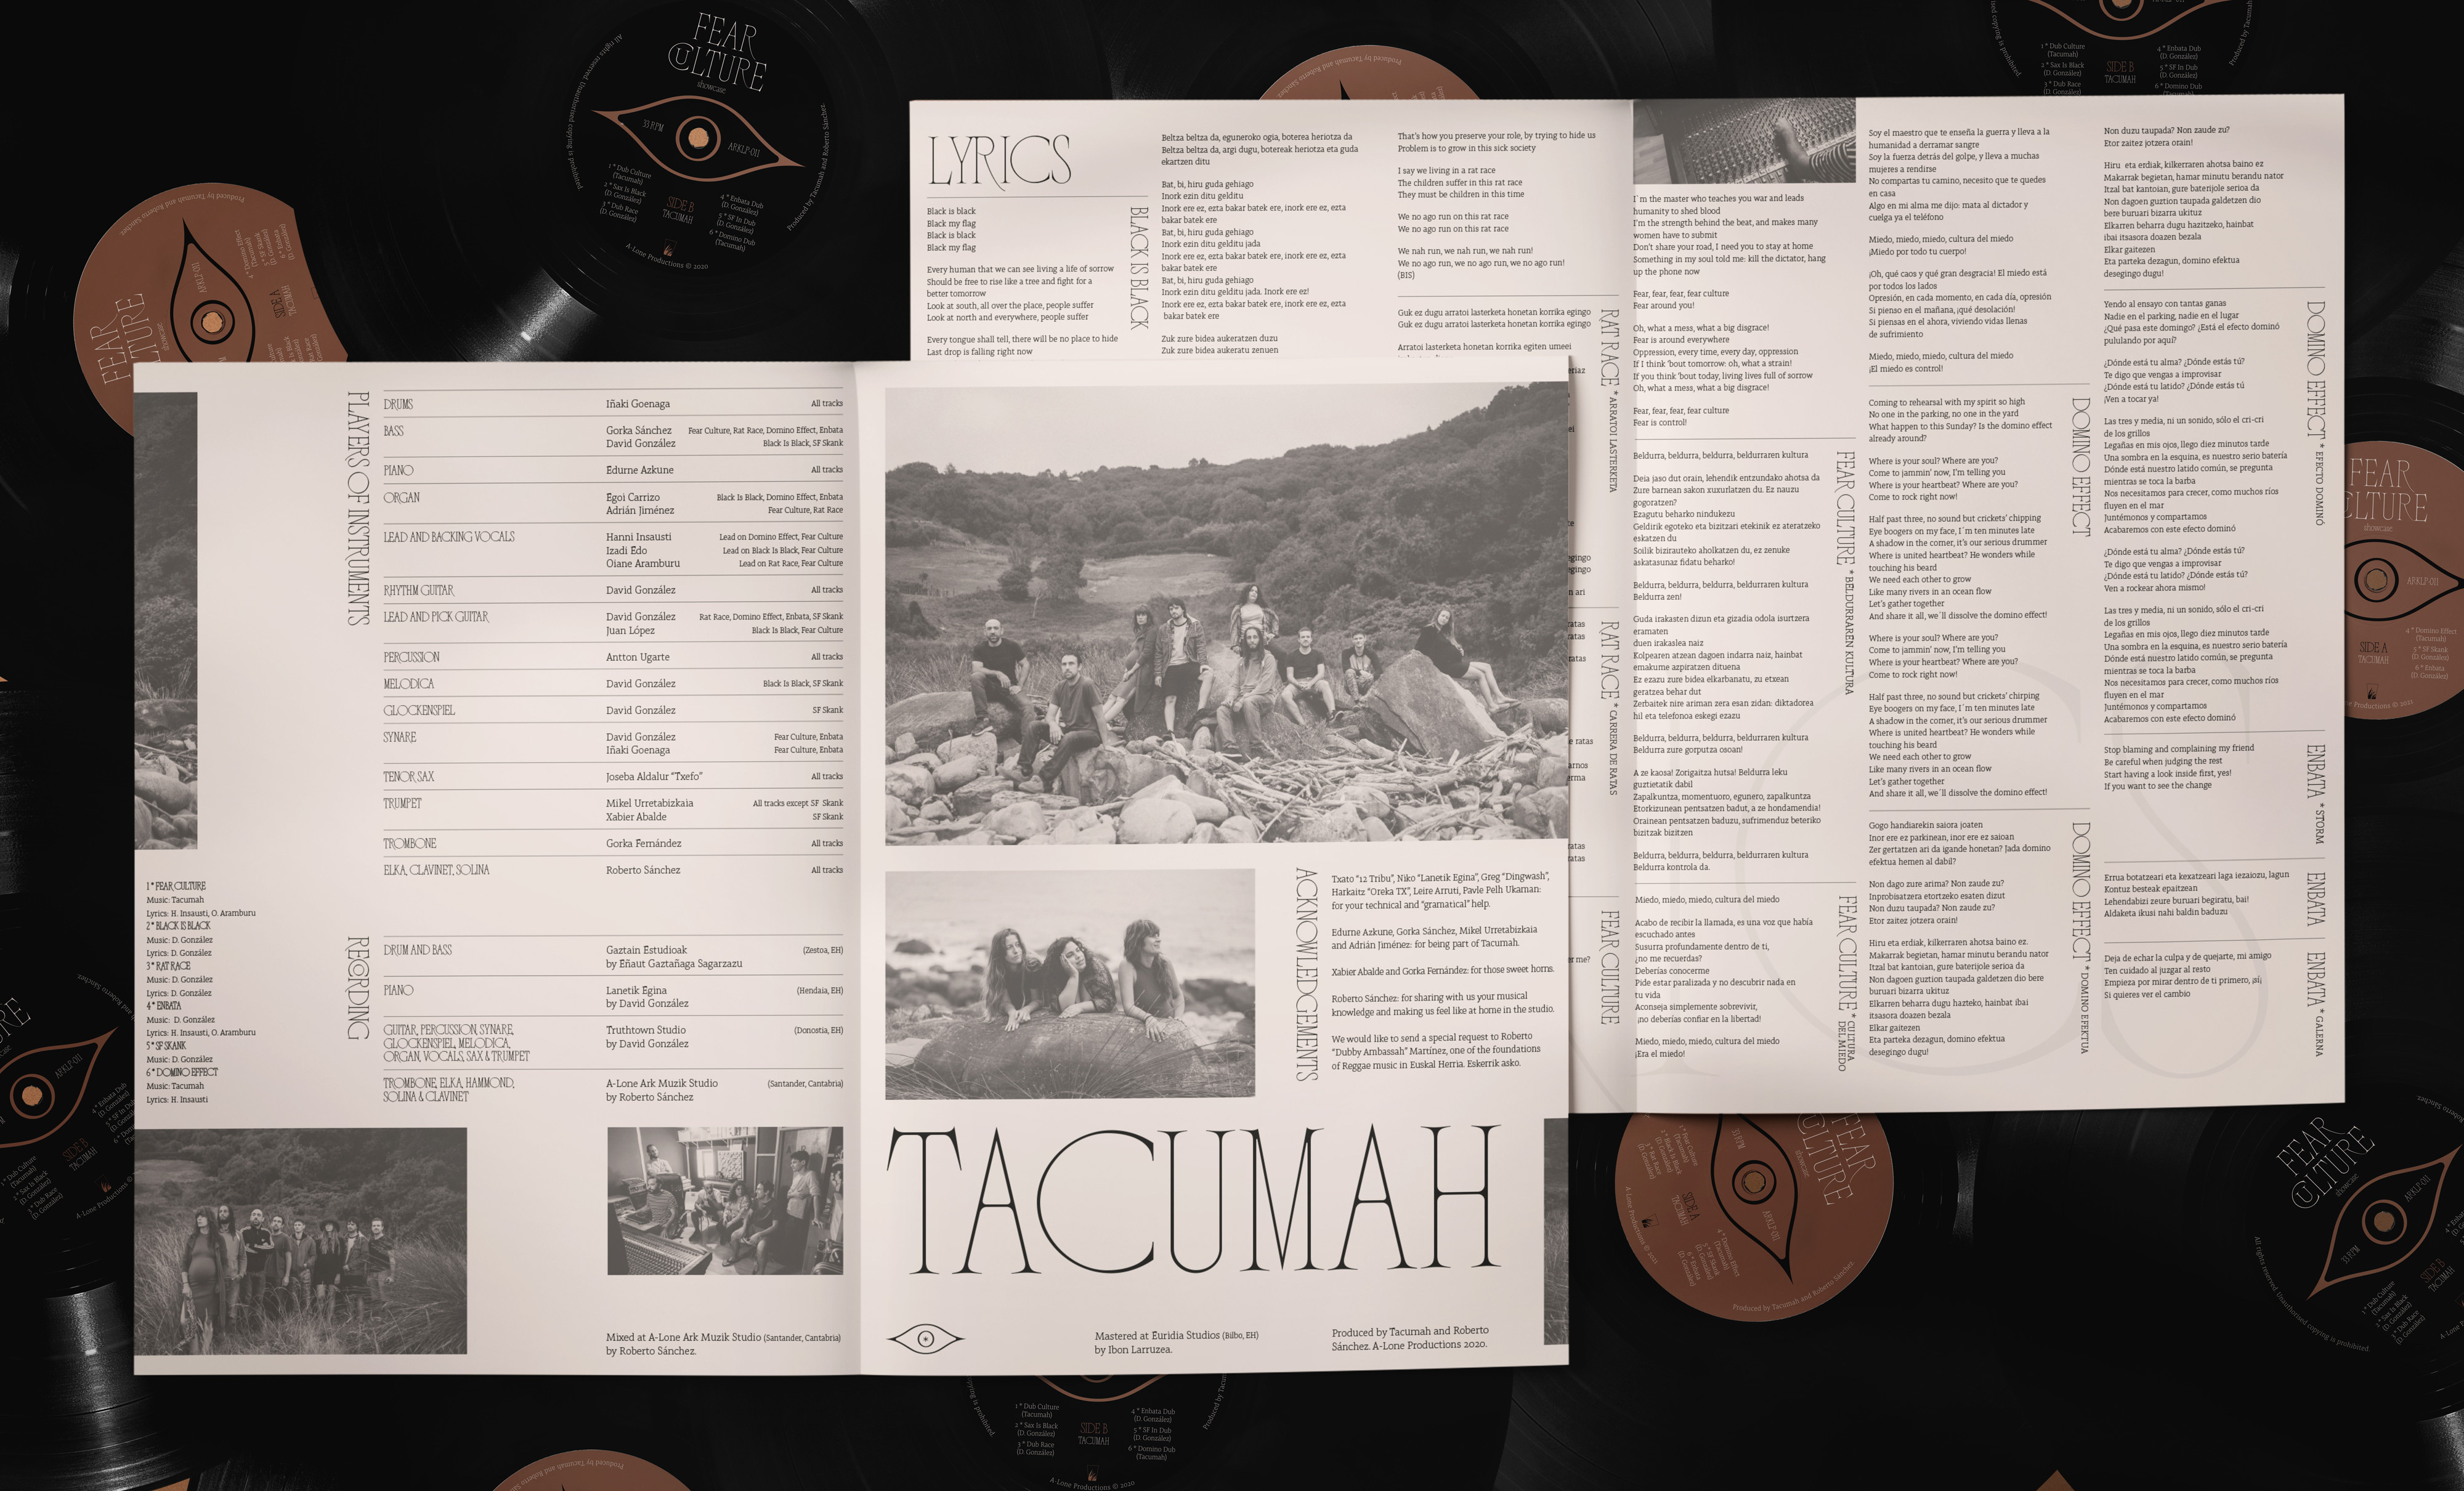 Tacumah LP - Fear Culture by Clara Briones - Antton Ugarte - Creative Work - $i